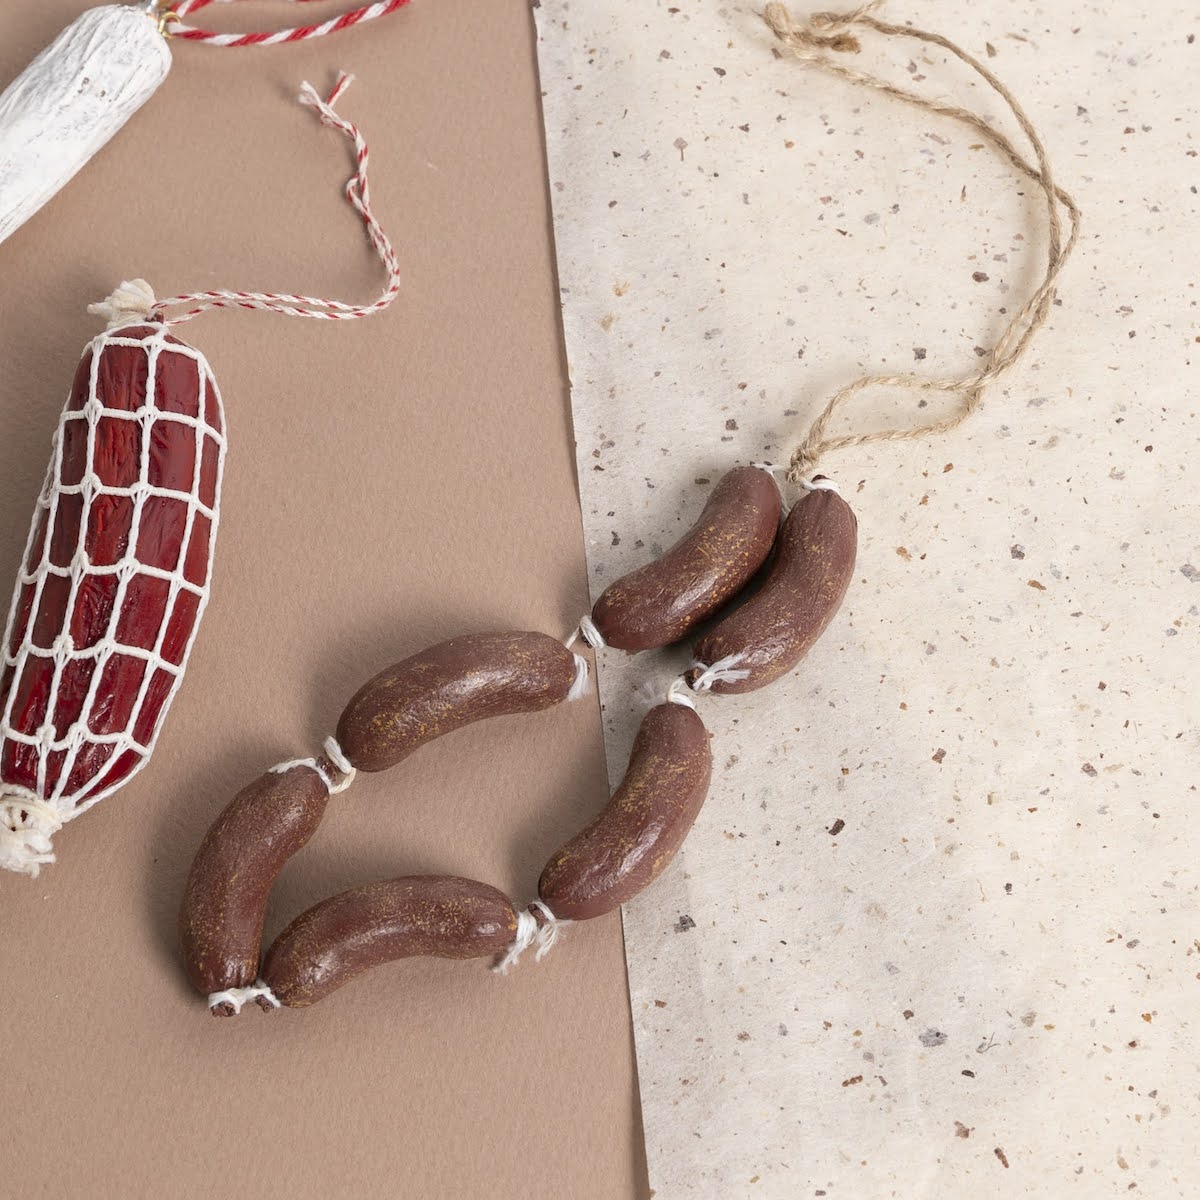 Link of Sausages Ornament - P I C N I C 